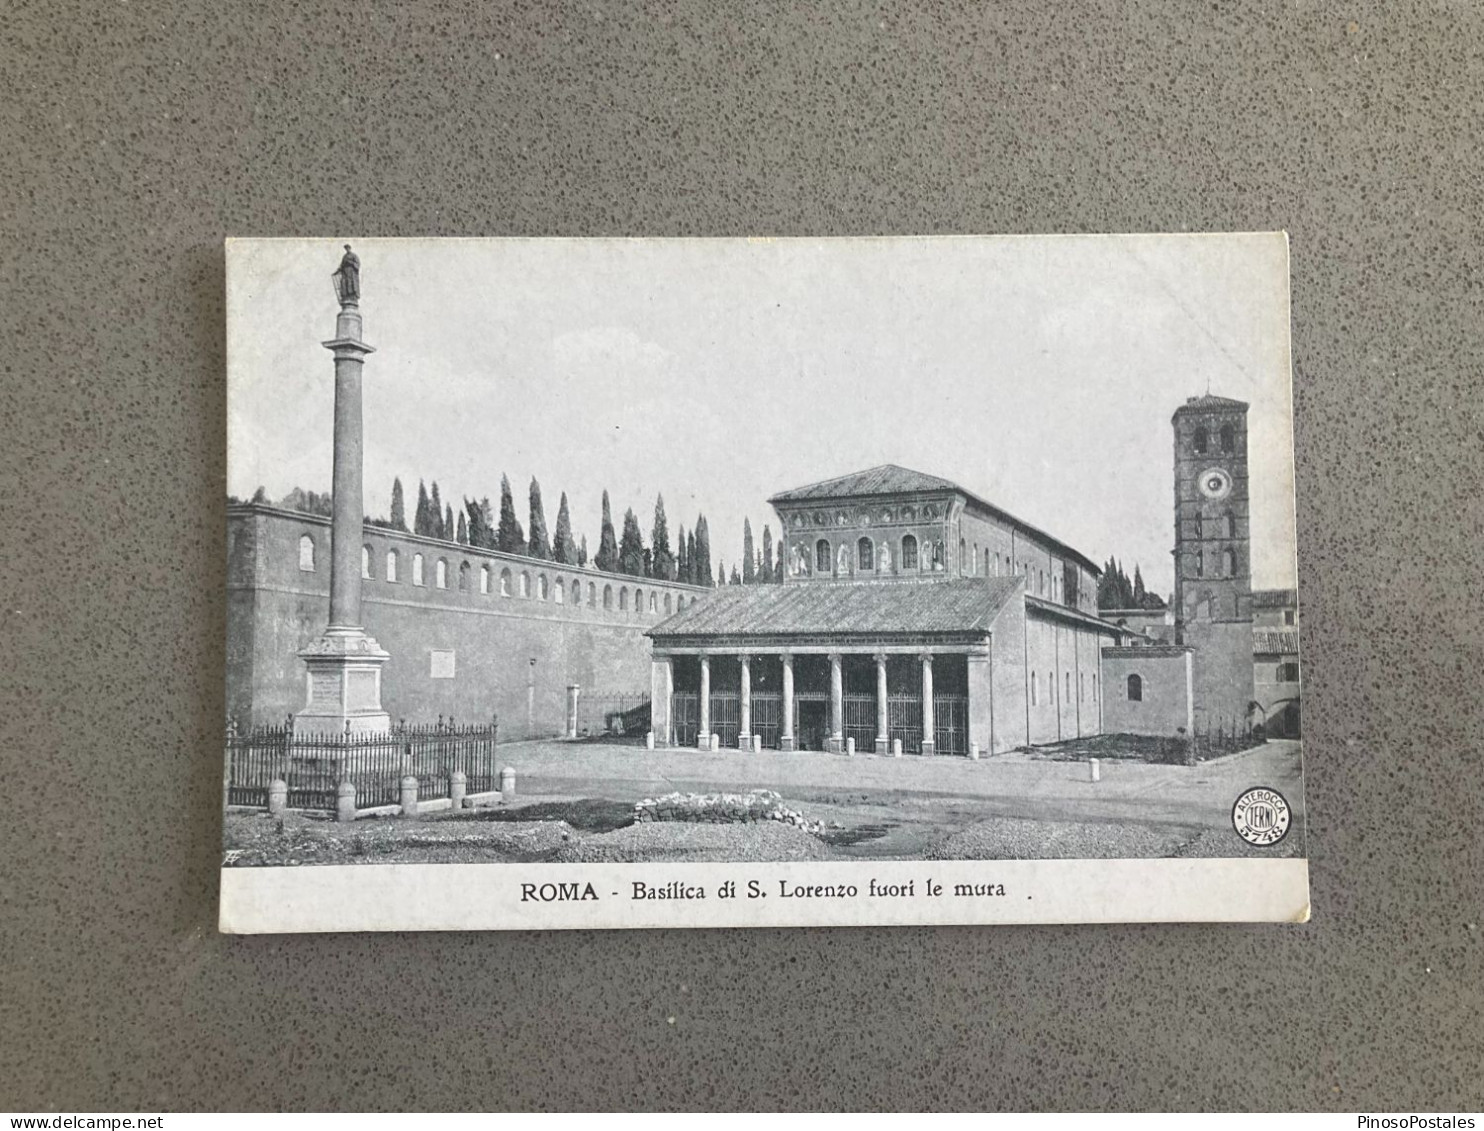 Roma - Basilica Di San Lorenzo Fuori Le Mura Carte Postale Postcard - Andere Monumente & Gebäude